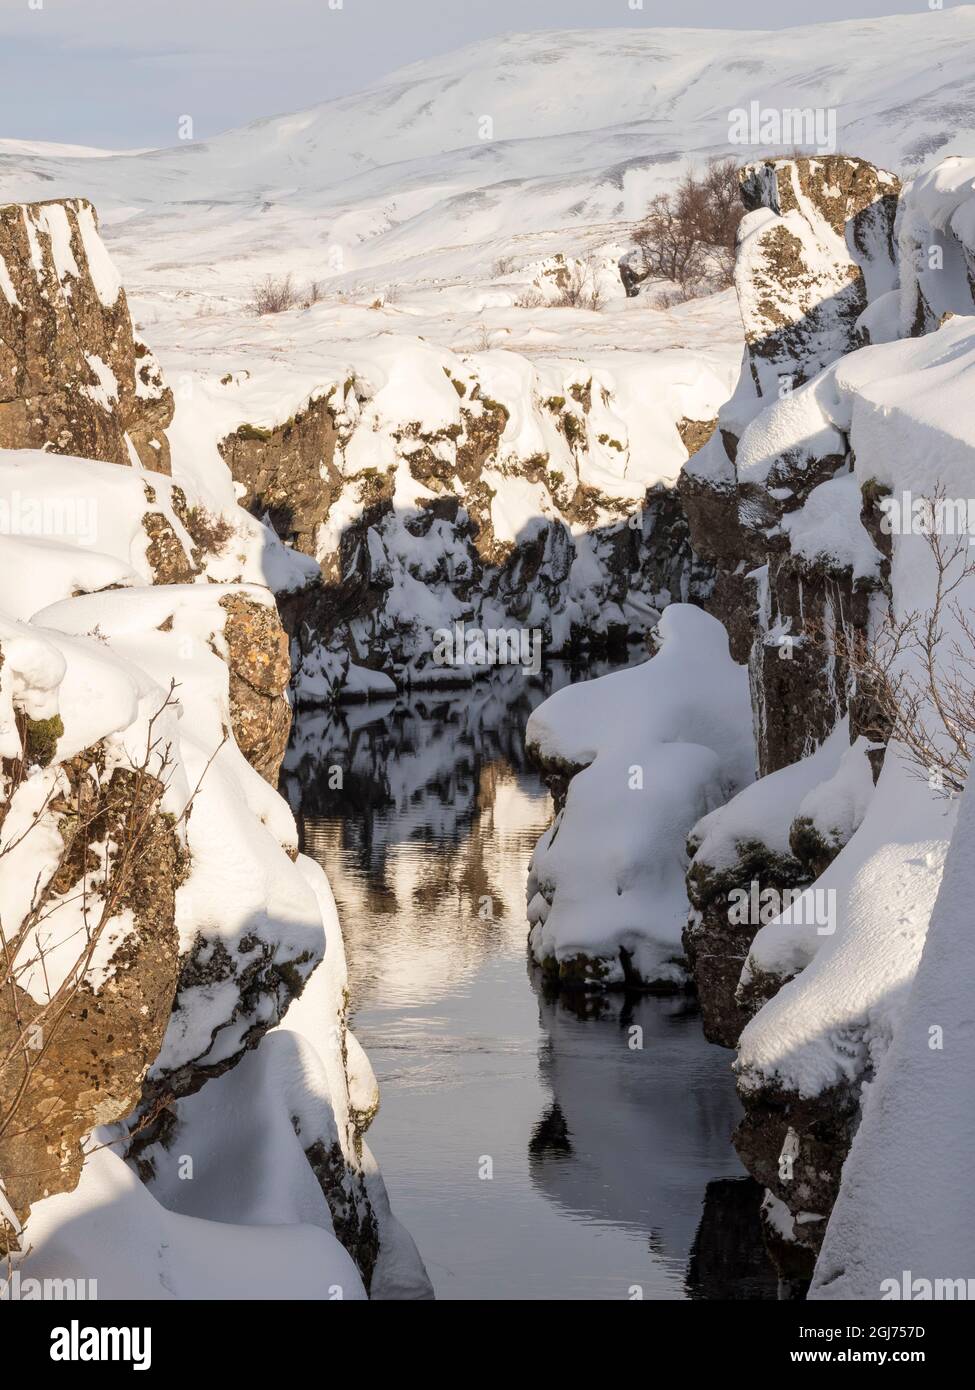 Gorge de Flosagja. Islande, parc national de Thingvellir, site classé au patrimoine mondial de l'UNESCO, recouvert de neige fraîche en hiver. Banque D'Images